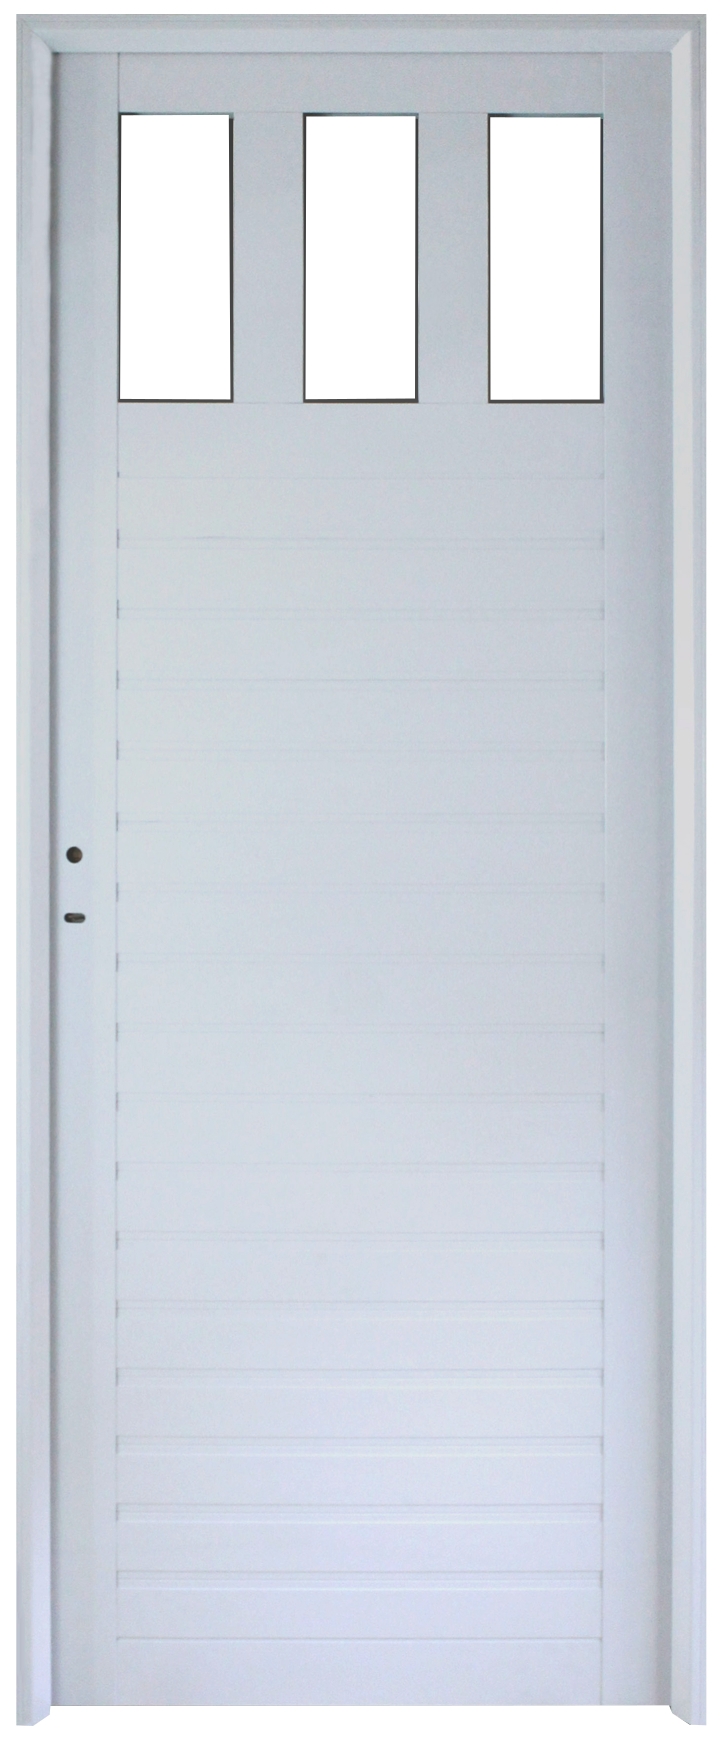 Puerta Aluminio 1/4 Vidrio Repartido 80x200